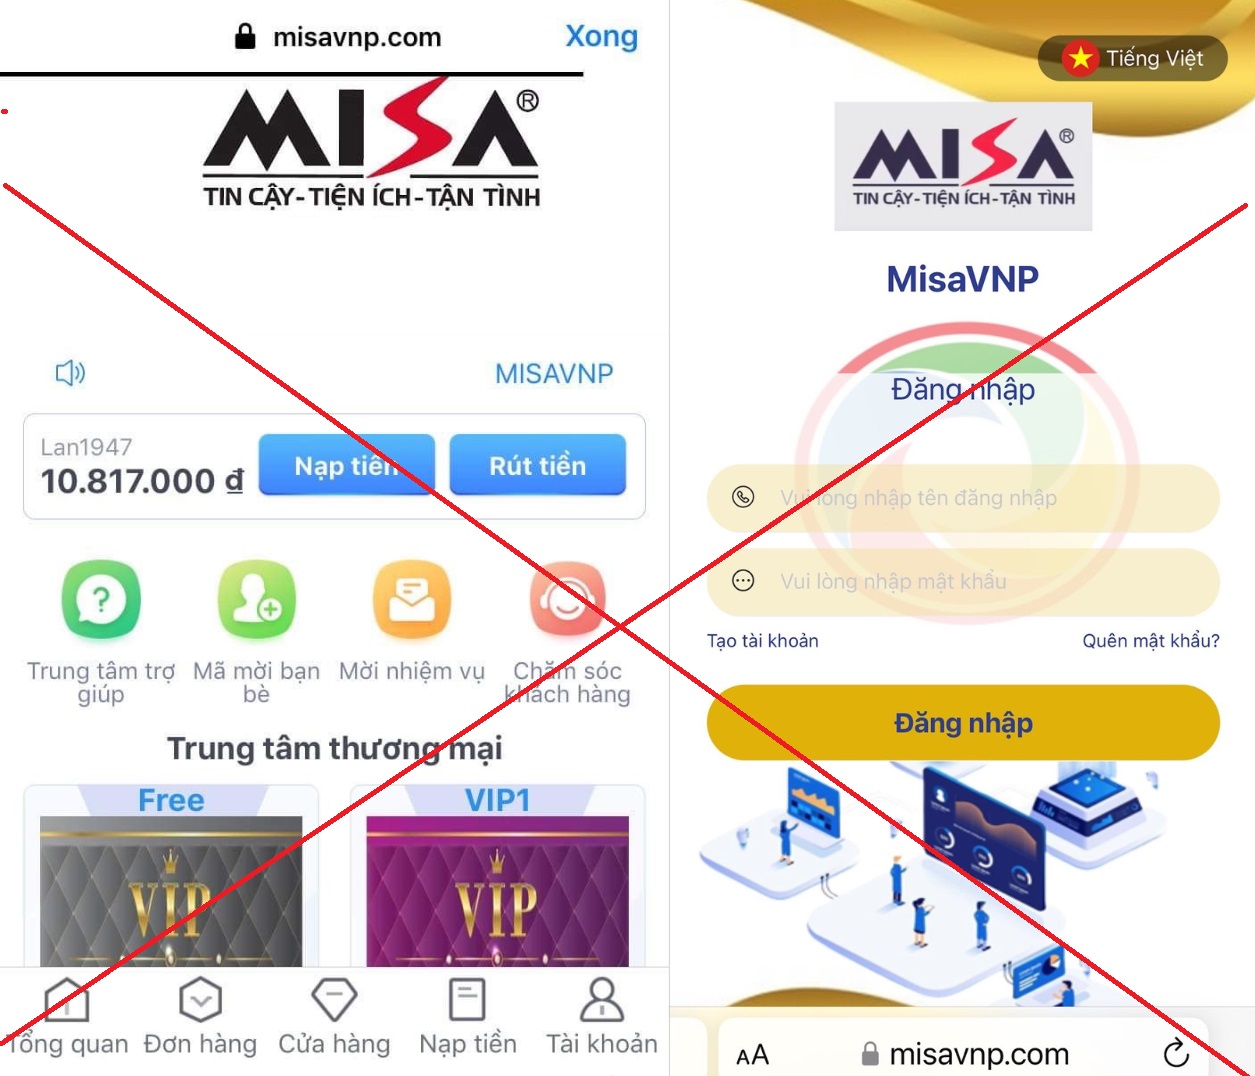 Hình ảnh website giả mạo MISA yêu cầu khách hàng nạp tiền lên hệ thống nhằm lừa đảo chiếm đoạt tài sản. Ảnh: Vân Trường